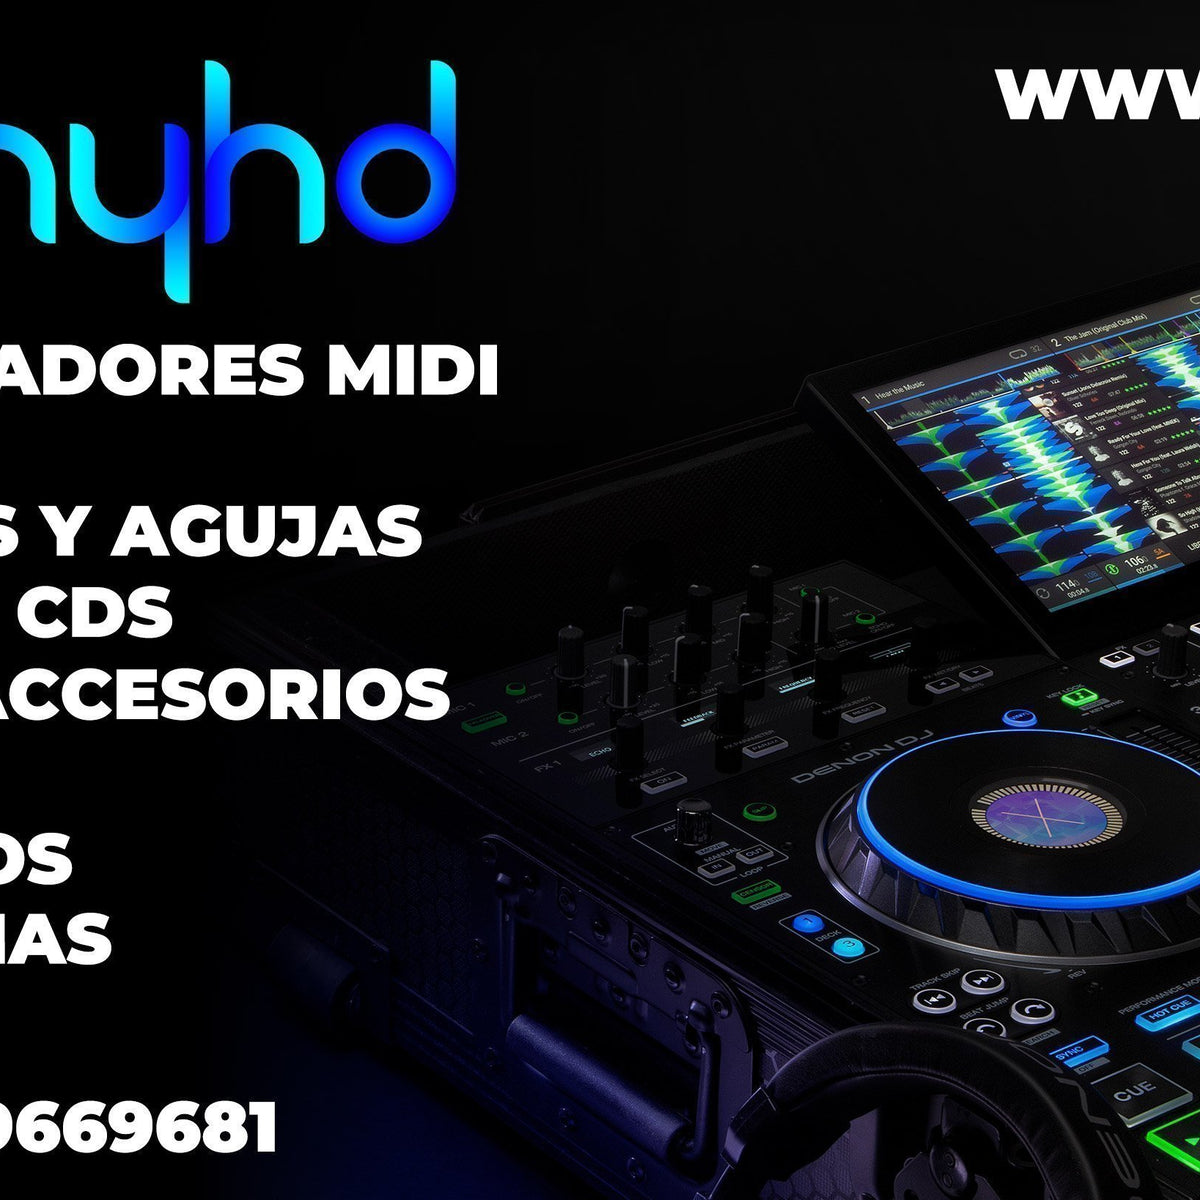 Monitores de Estudio Profesionales: Calidad Myhd para DJs – MYHD